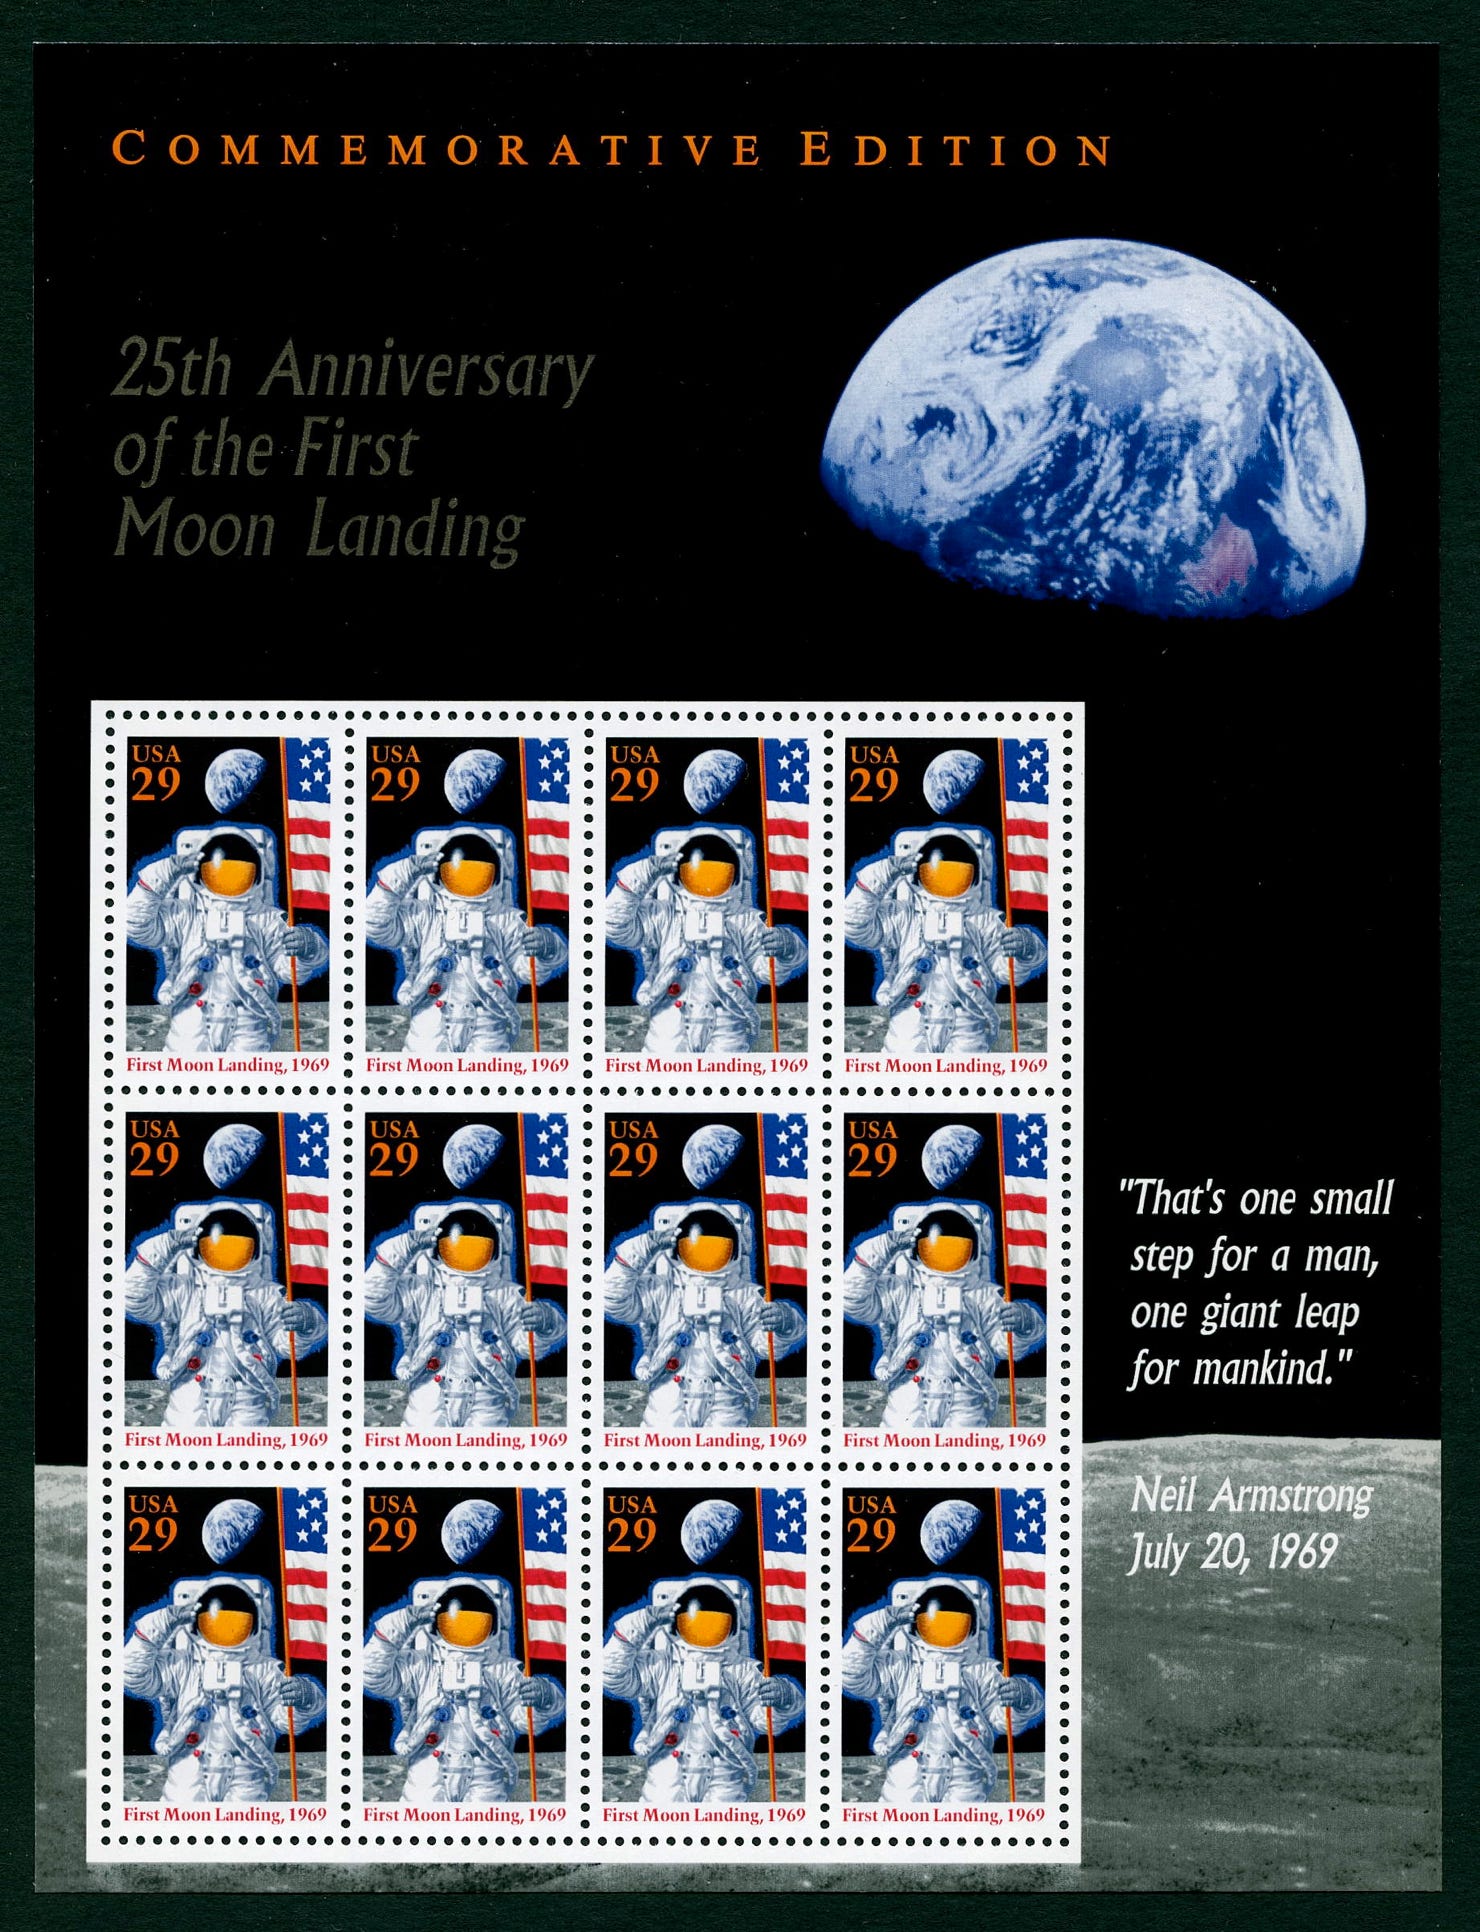 USA 1994 Apollo 11 commemorative stamp sheet